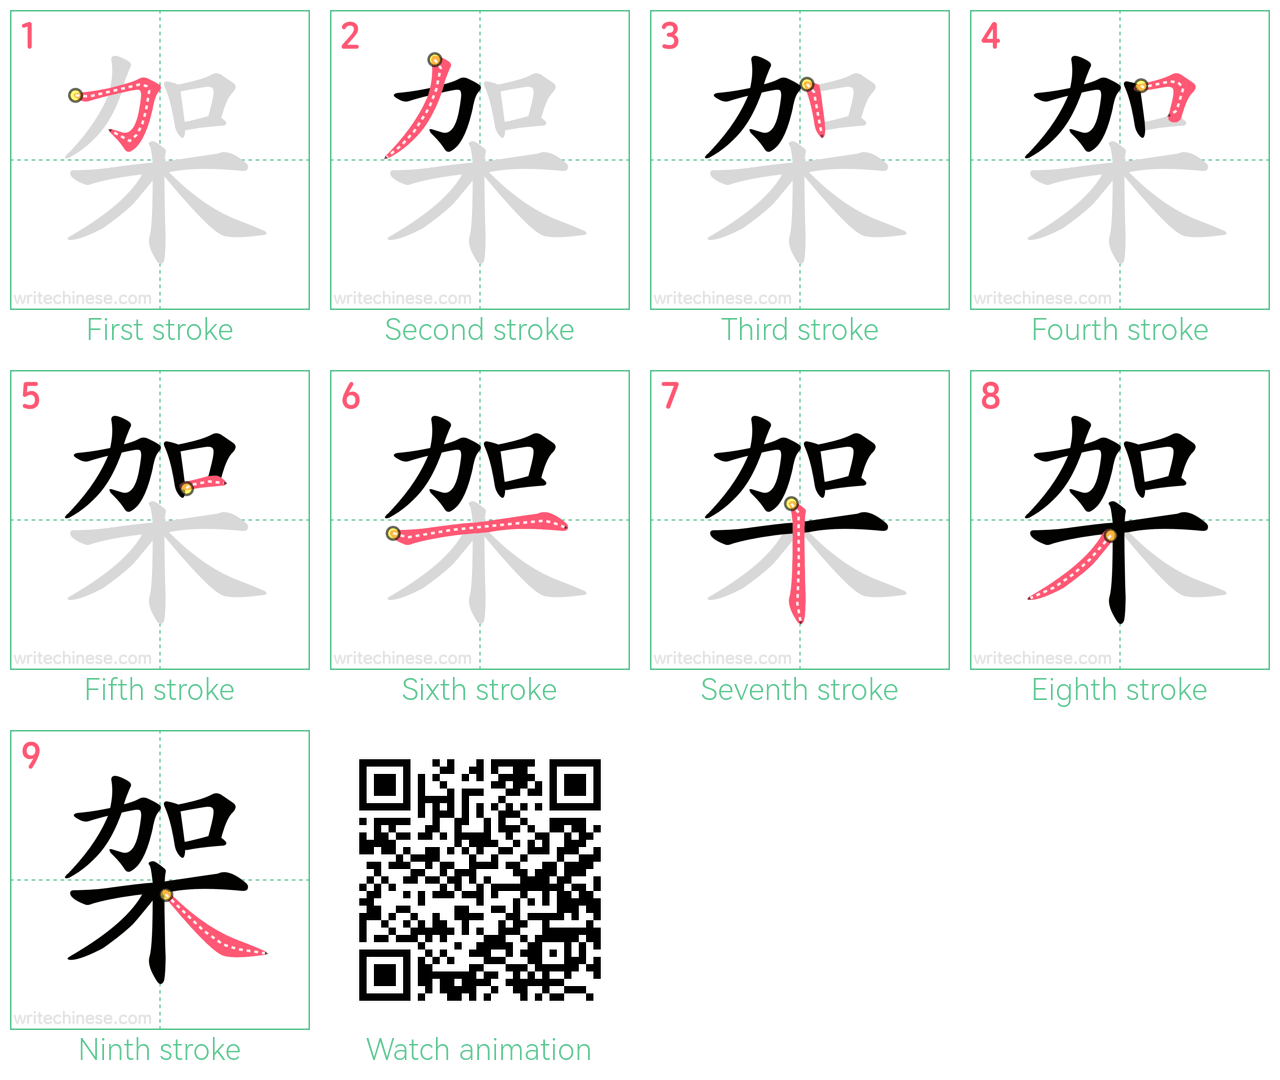 架 step-by-step stroke order diagrams